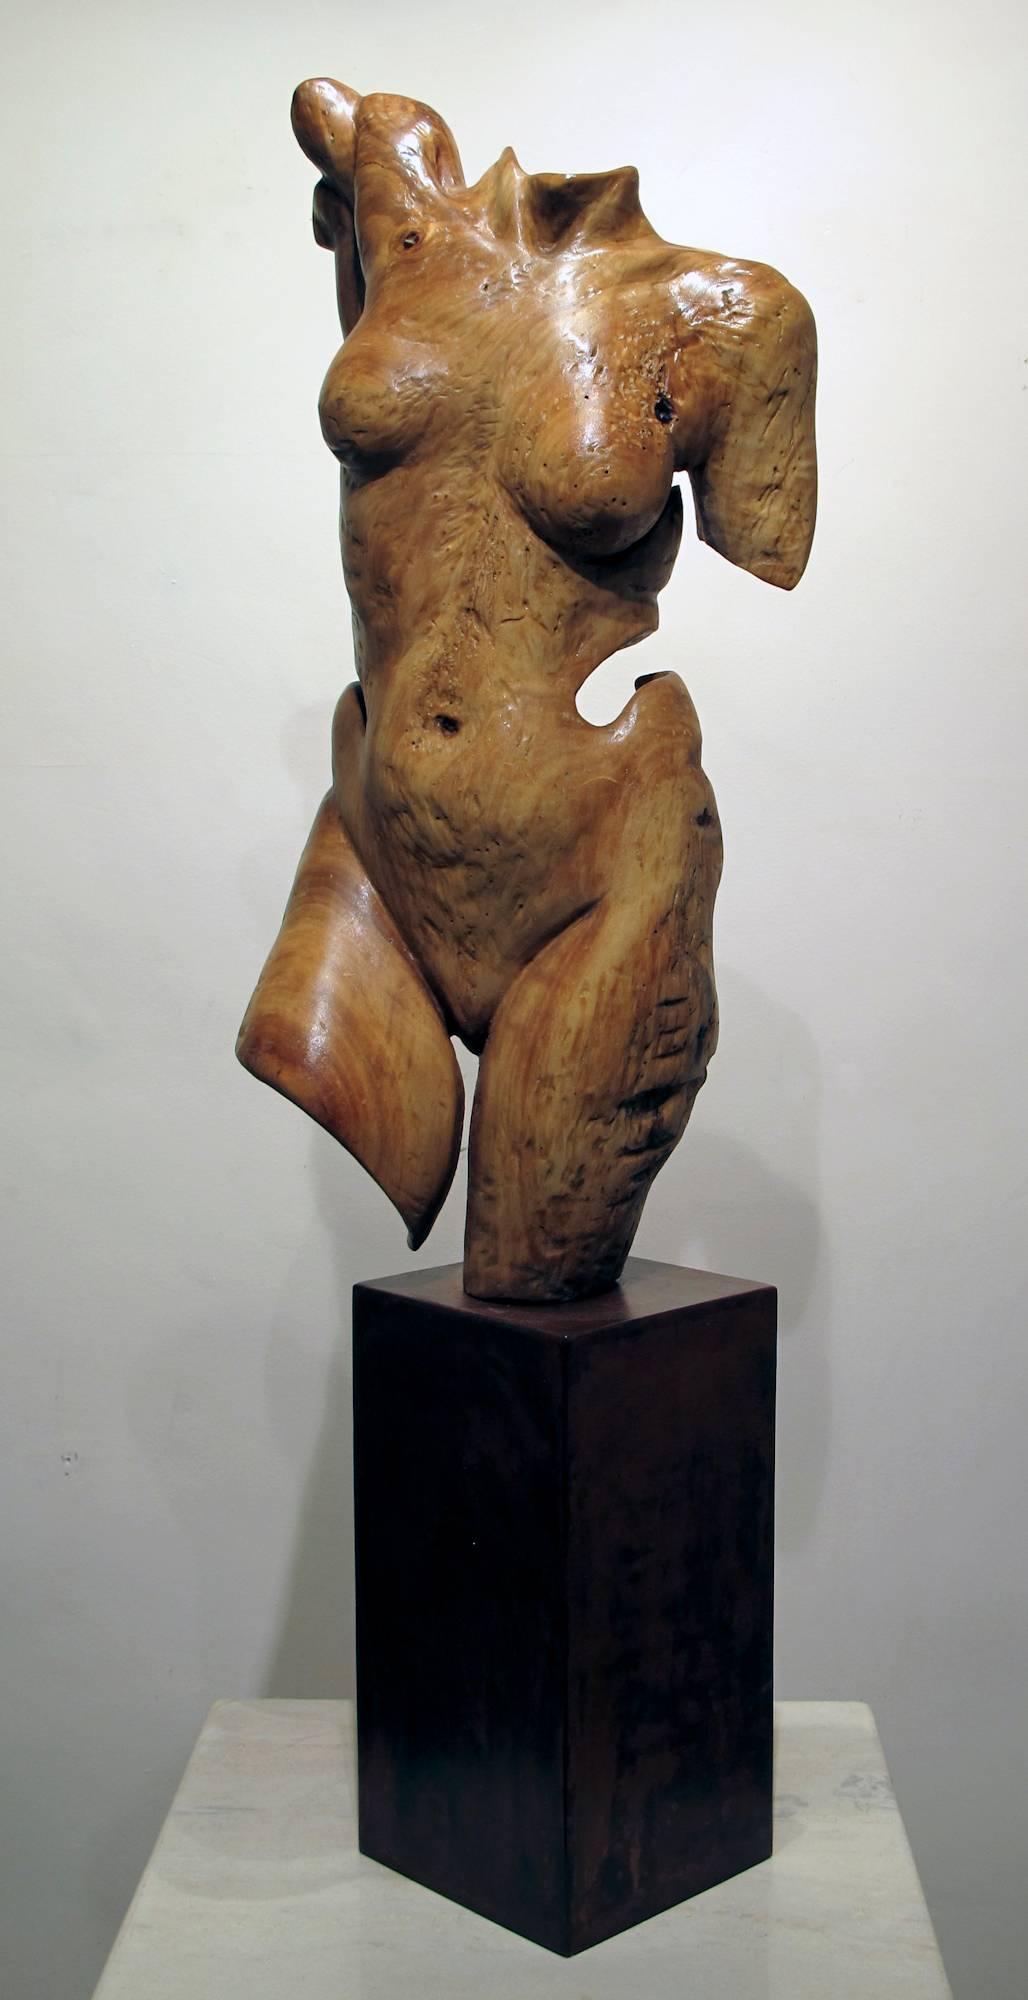 Troy Williams Nude Sculpture - Torso, female nude wood sculpture